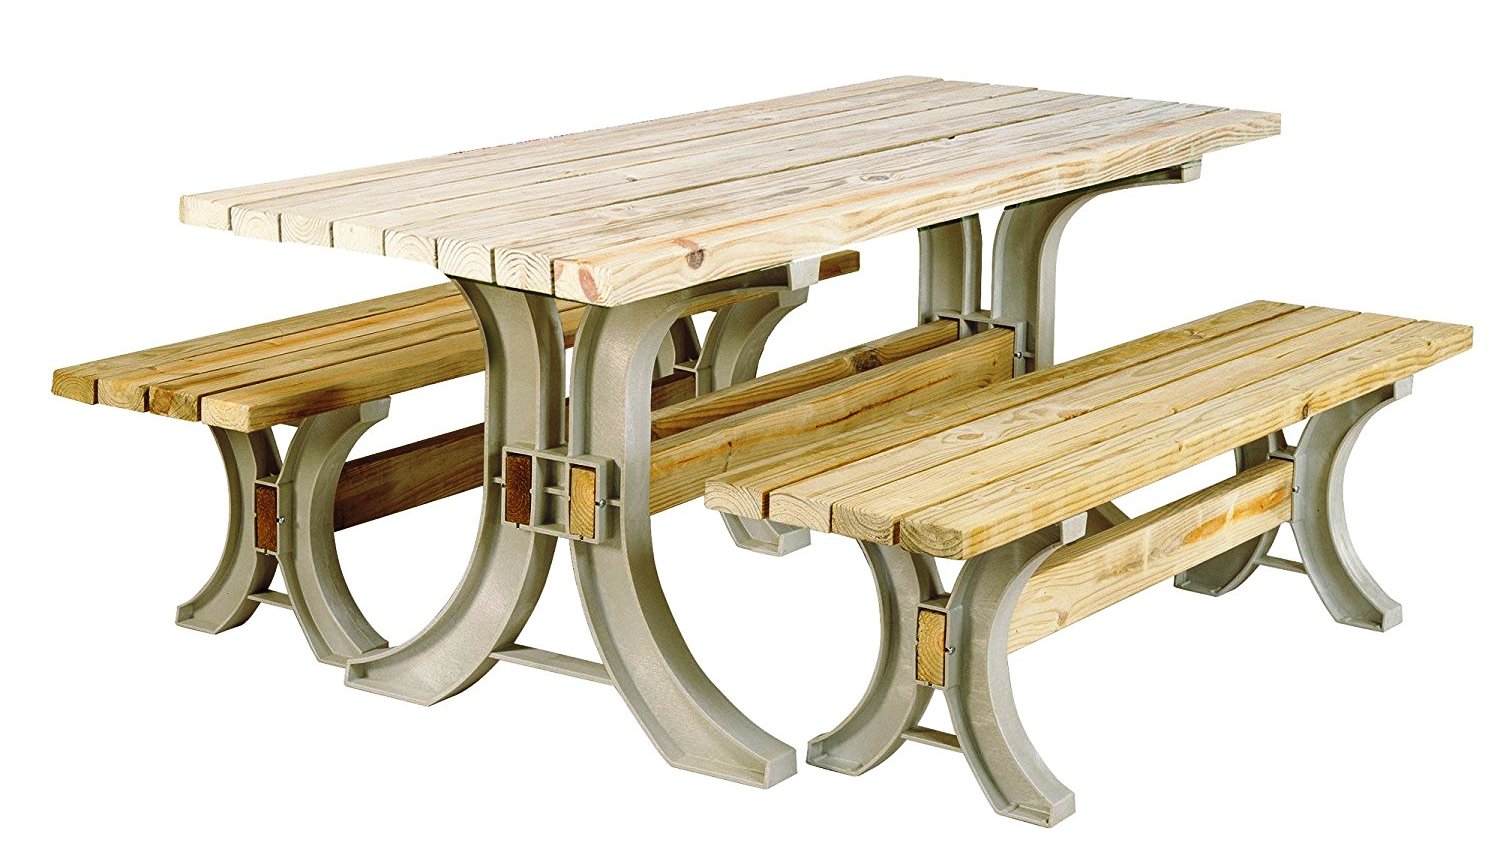  דגם  Picnic Table or Patio ערכה לבניית שולחן ו+ 2 ספסלים  לגינה